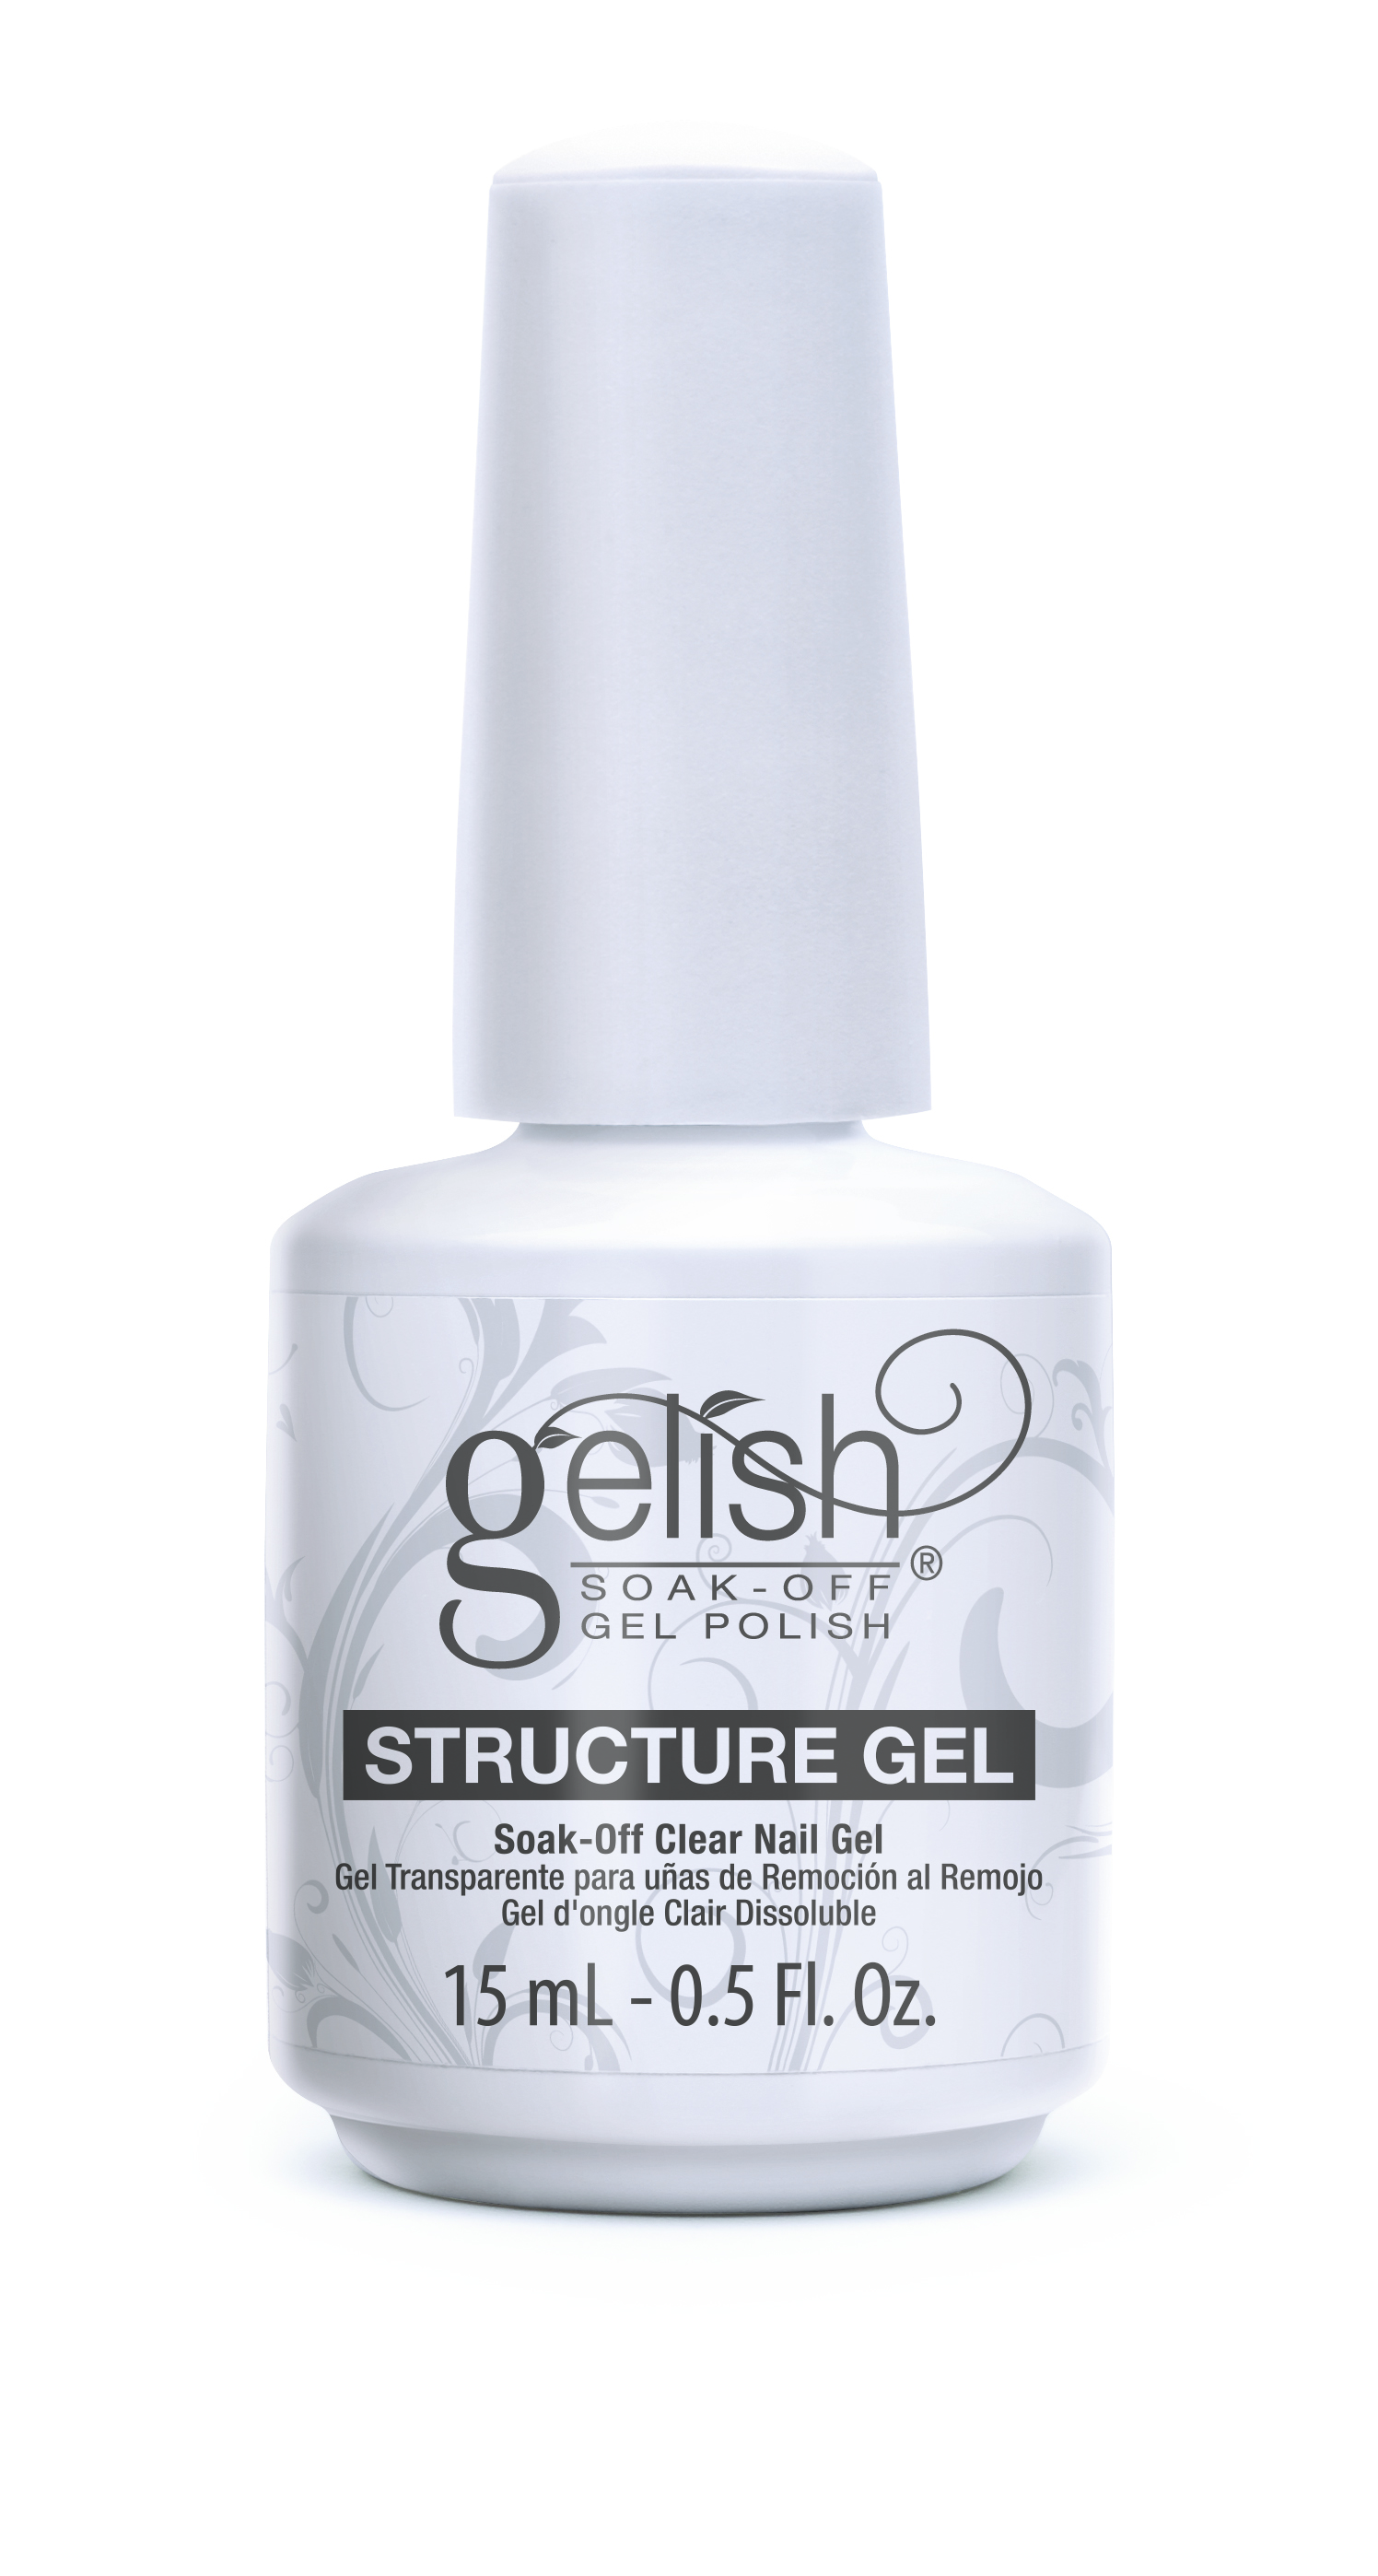 Structure gel 1.16 5. Гель-лак Gelish playin' it cool, 15 мл. Gelish, прозрачный укрепляющий гель с кисточкой structure Clear, 15 мл. Гель для моделирования. Моделирующий гель для ногтей.